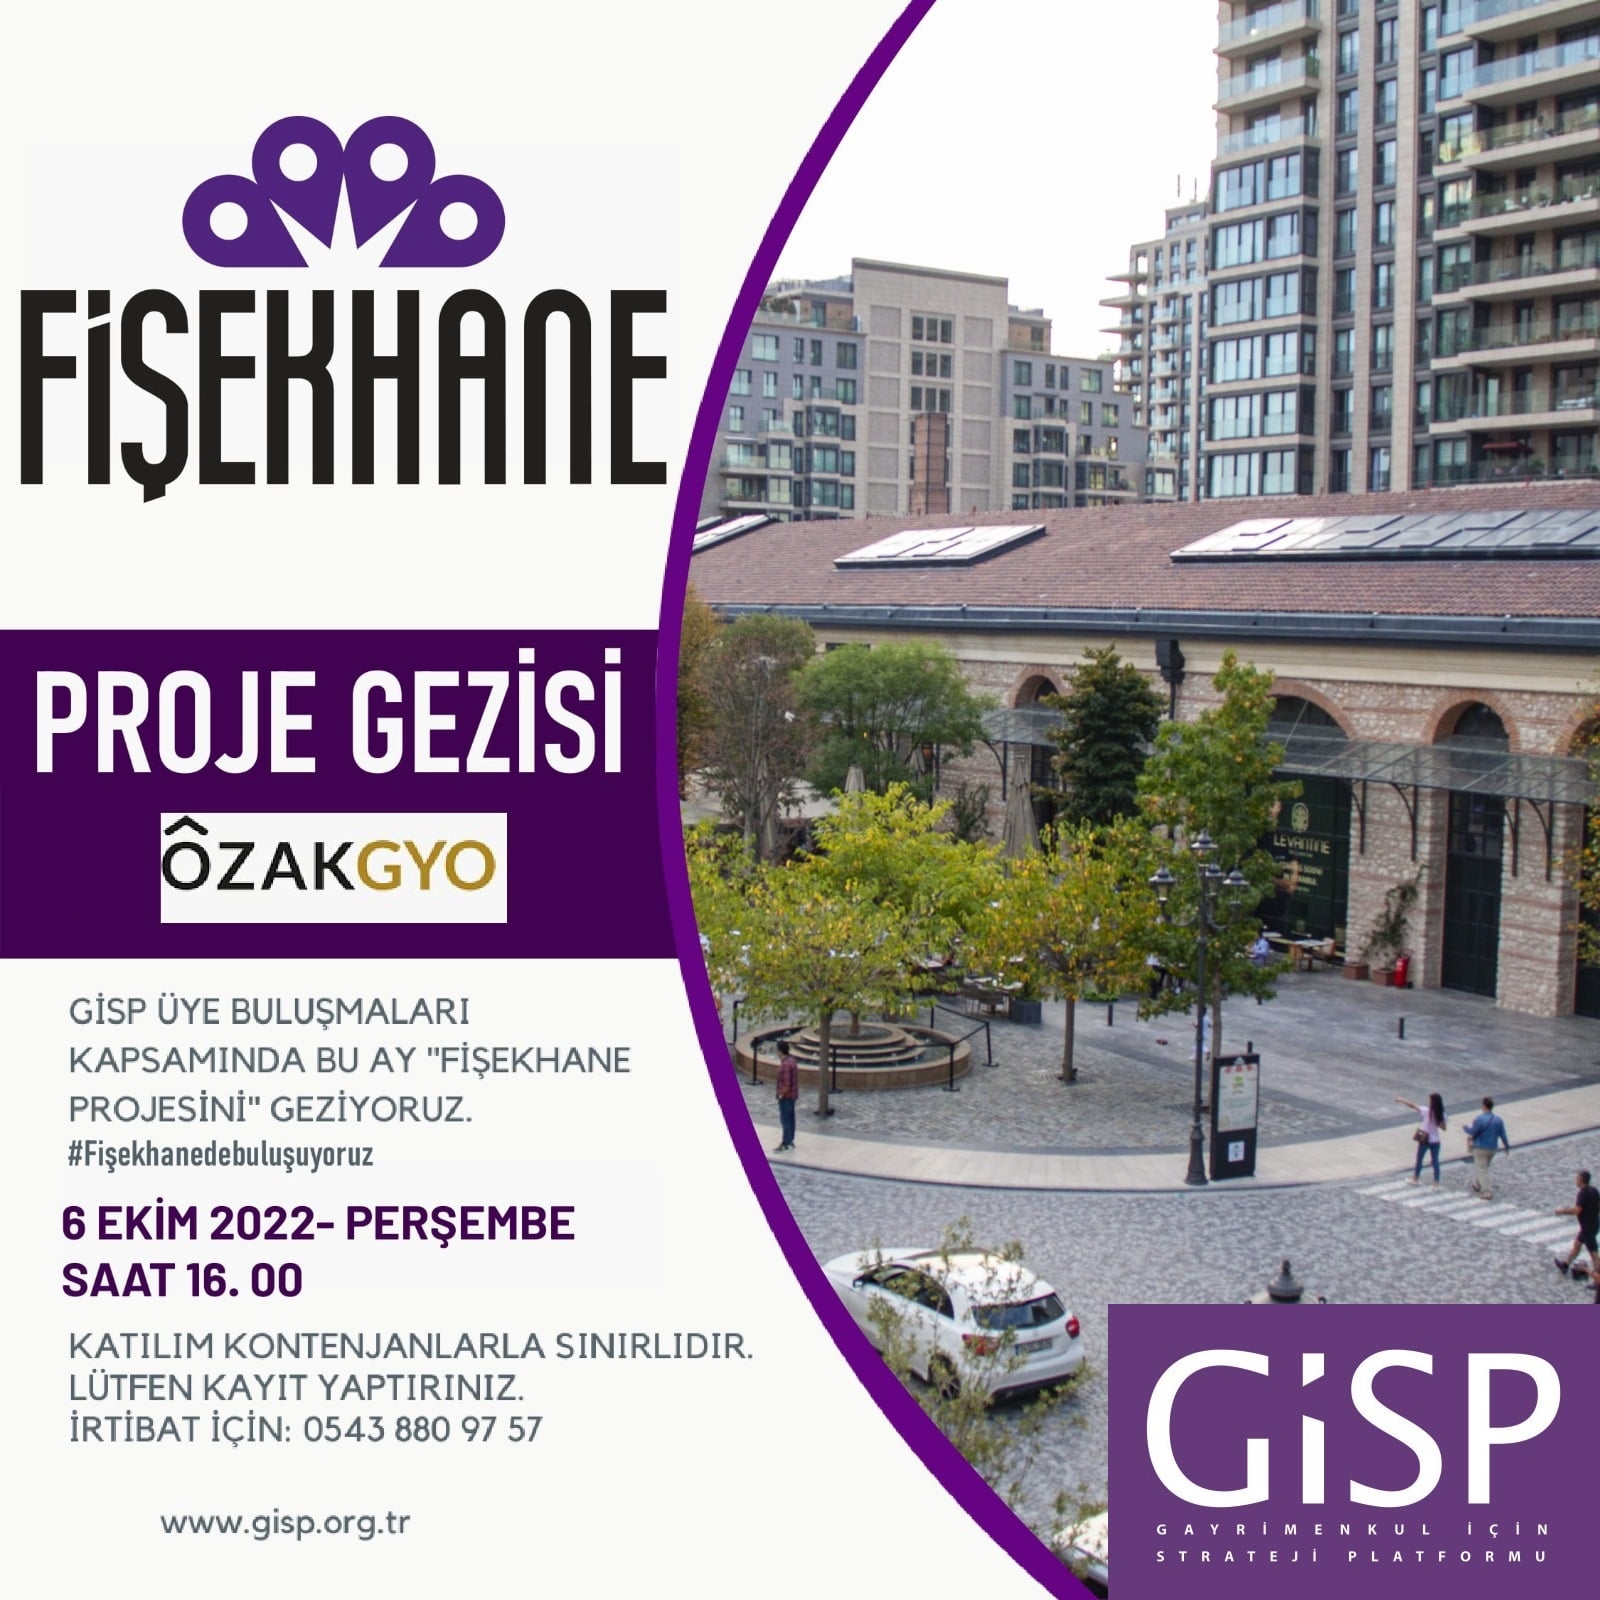 GİSP Proje Gezileri kapsamında 6 Ekim 2022 Tarihinde Fişekhane Proje Gezisini Düzenledik.